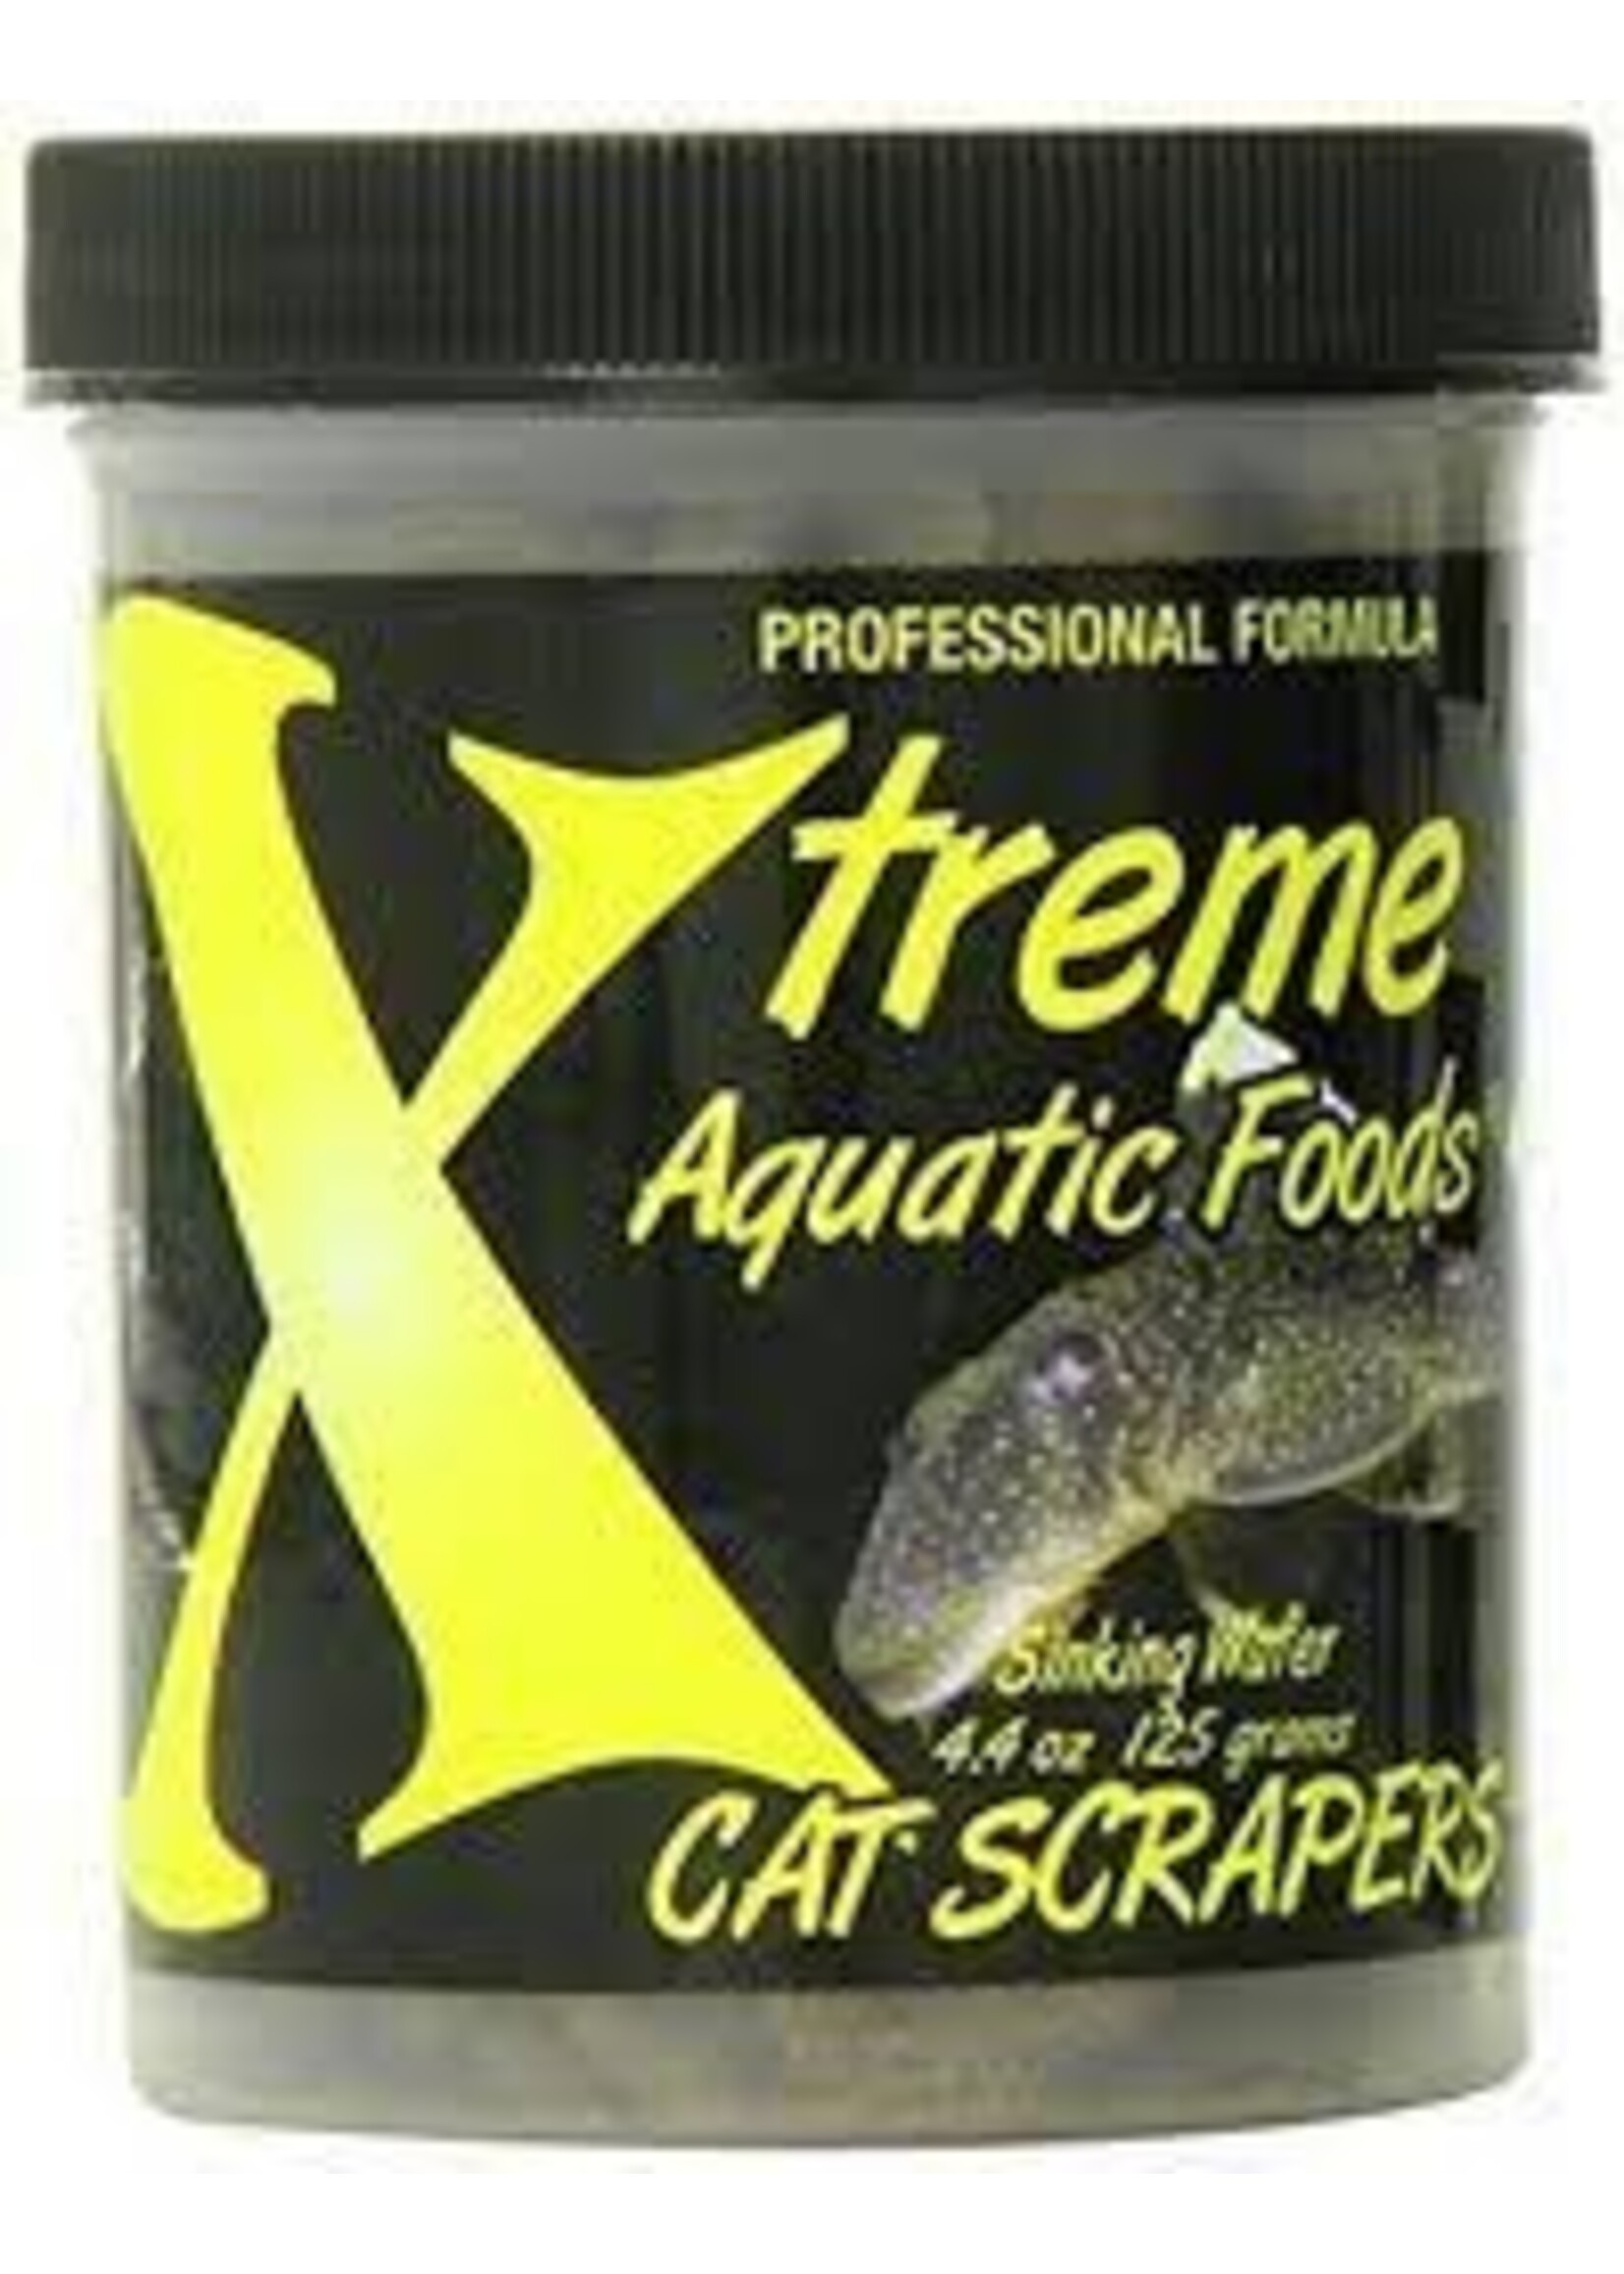 Xtreme Aquatics Xtreme Aquatic Foods Cat Scrapers